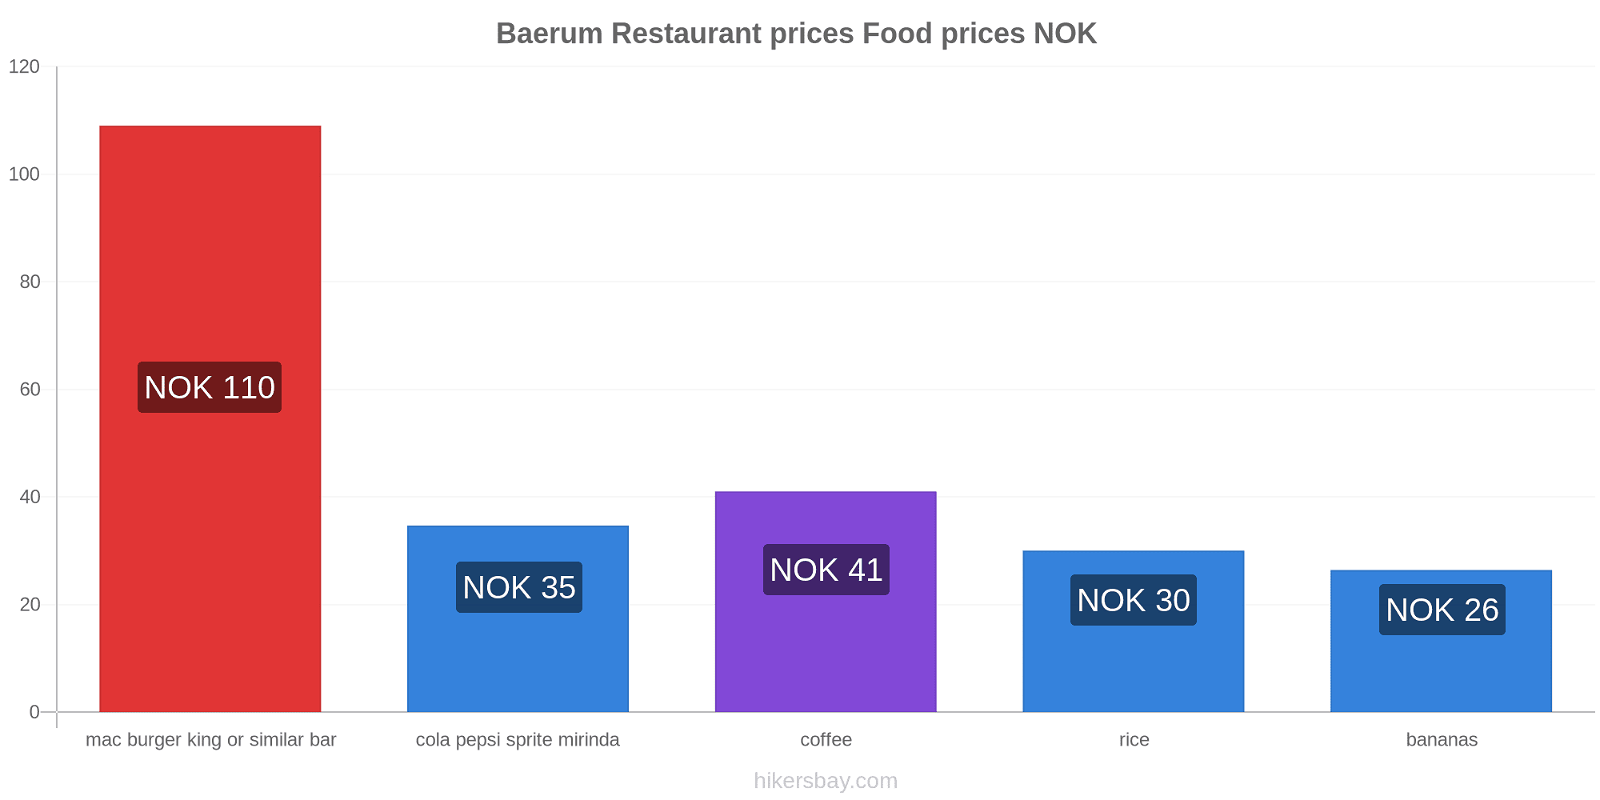 Baerum price changes hikersbay.com